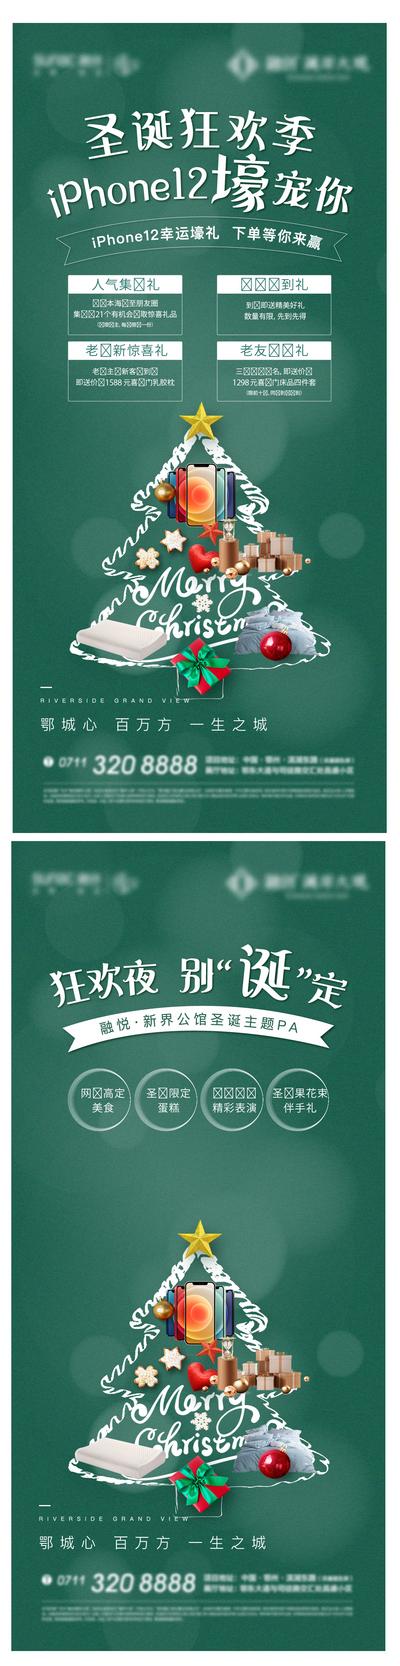 南门网 广告 海报 节气 圣诞 加推 购房节 购物节